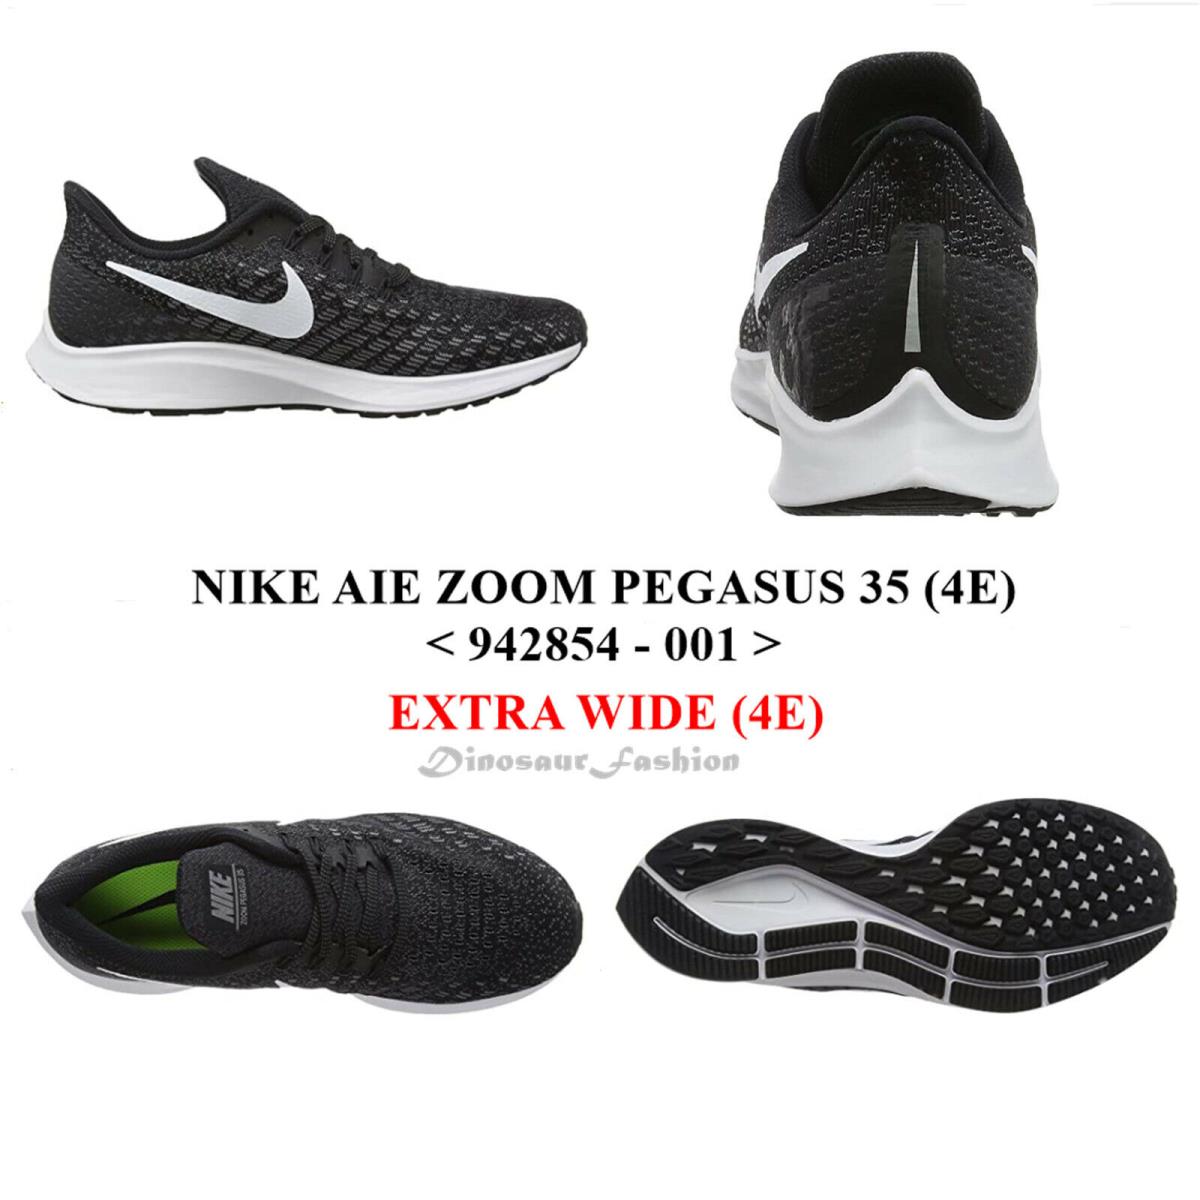 Nike Air Zoom Pegasus 35 4E 942854 - 001 .men`s Running Shoes - BLACK/WHITE-GUNSMOKE-OIL GREY , BLACK/WHITE-GUNSMOKE-OIL GREY Manufacturer